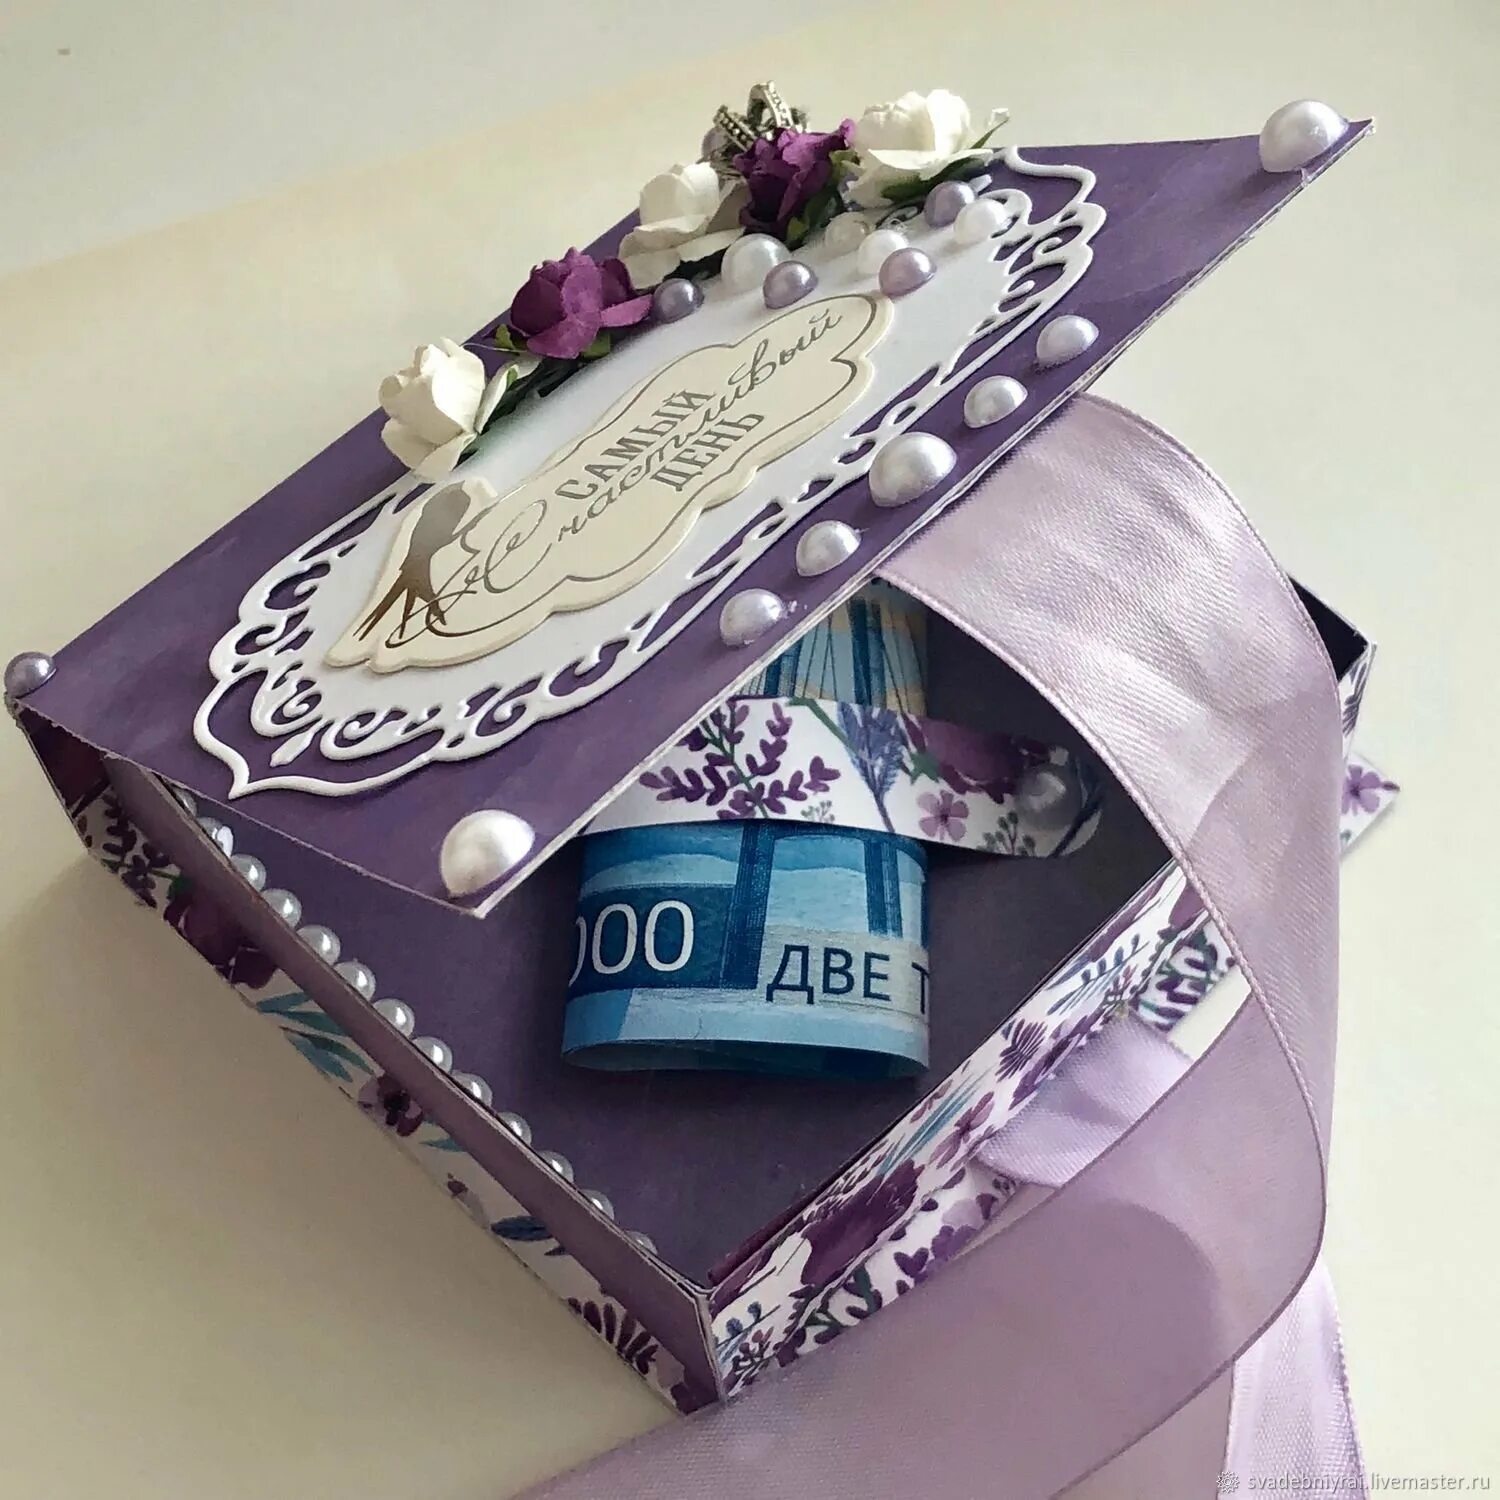 Подарить купюру. Подарок на свадьбу. Необычный подарок на свадьбу. Подарочная коробочка для денежного подарка на свадьбу. Оригинальный подарок деньгами.